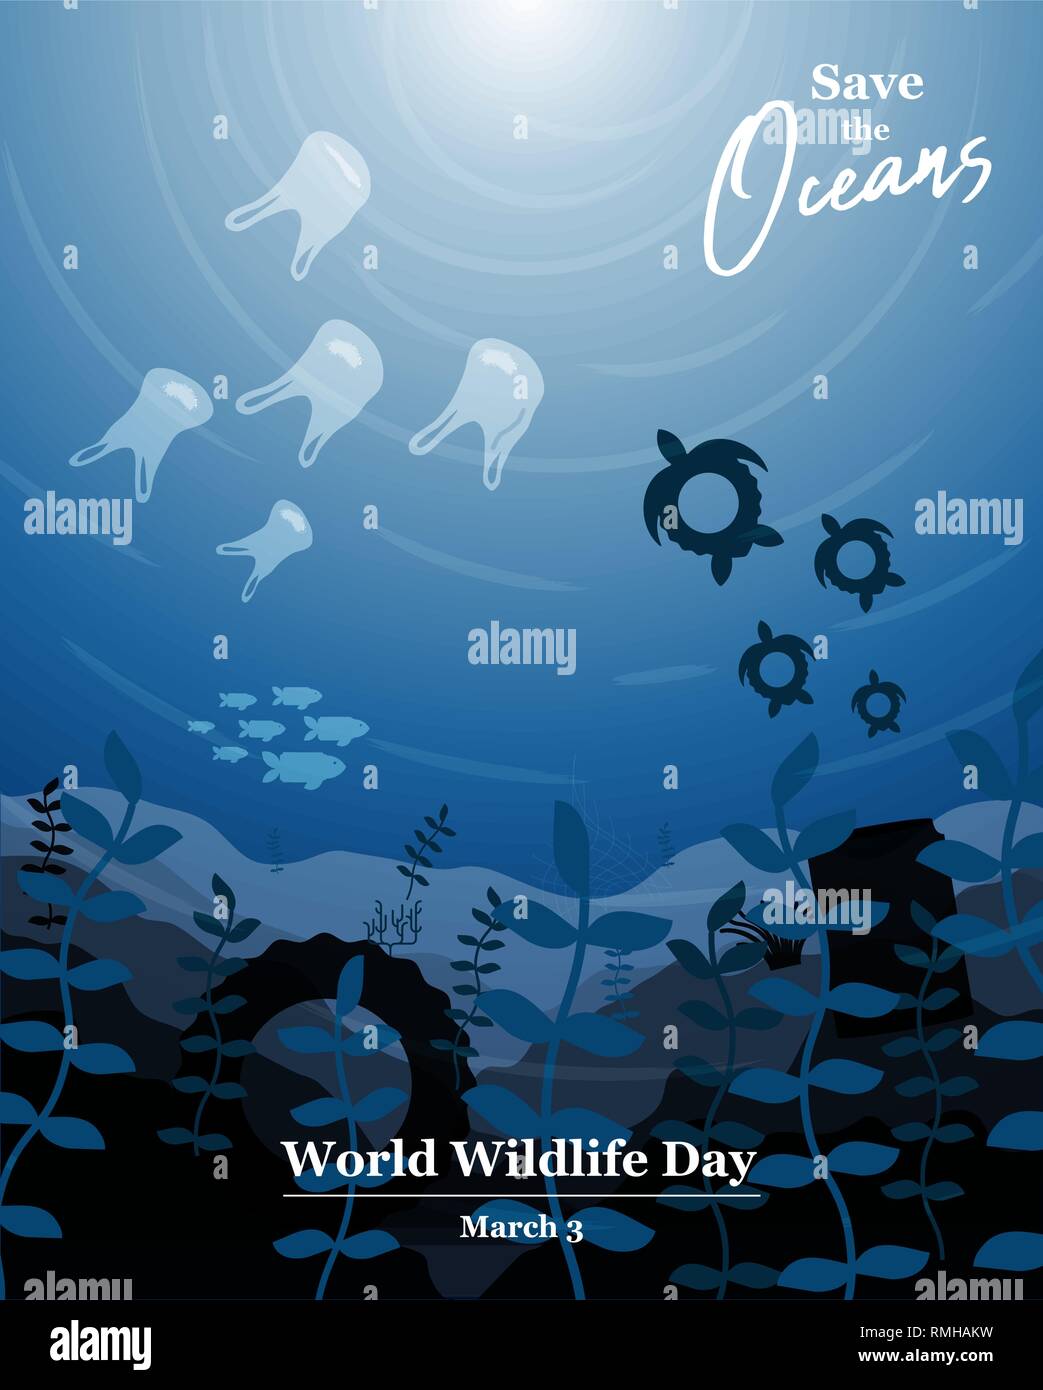 Wildlife Tag Abbildung: Meer Wasser Tiere und Fische, wie Abfälle aus Kunststoffen. Speichern Sie die Ozeane Konzept, Unterwasser Erhaltung Bewusstsein. Stock Vektor